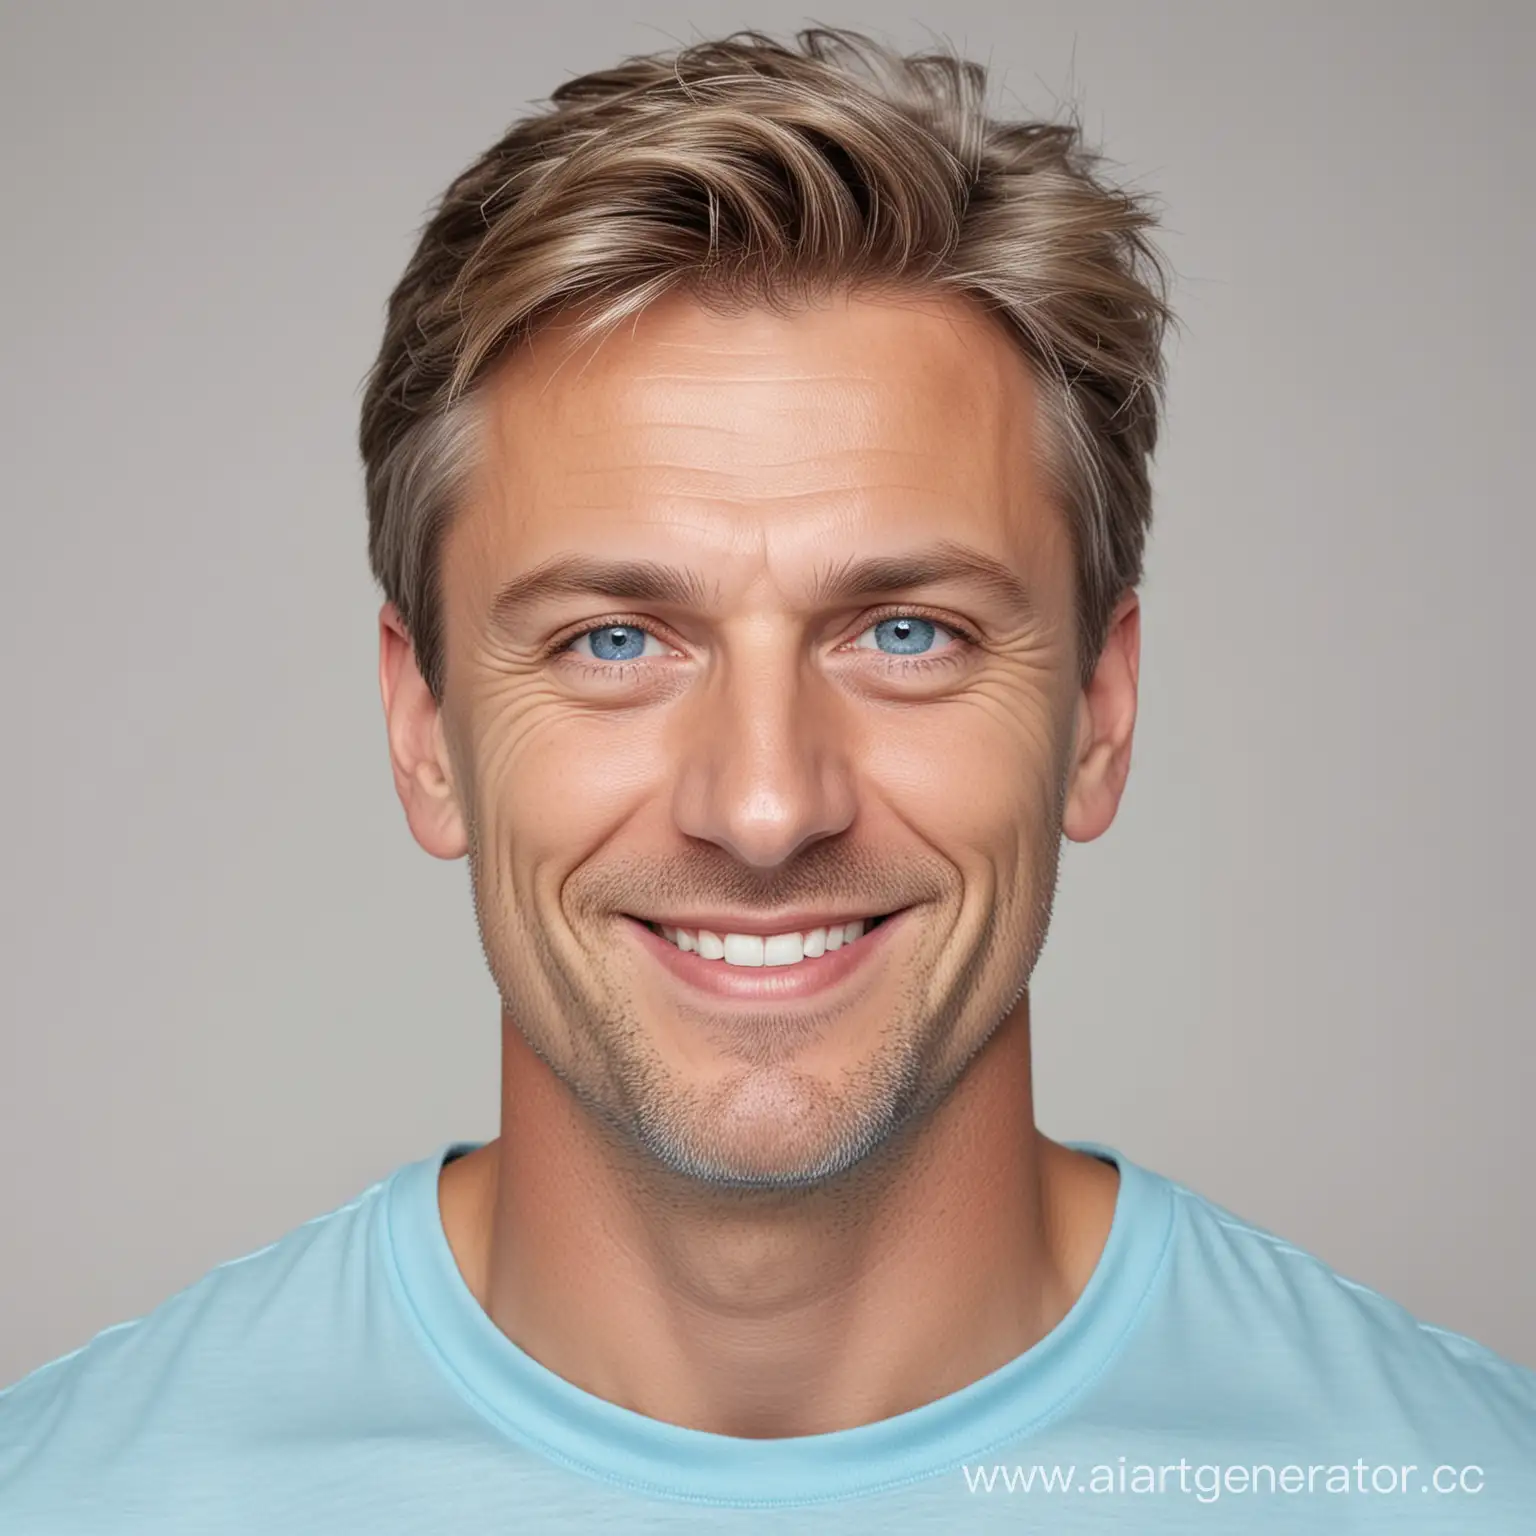 Мужчина европеец, улыбается, возраст 40 лет, светлые волосы, голубые глаза, фотопортрет белом фоне, в футболке светло-синего цвета, стиль реальность, 4k